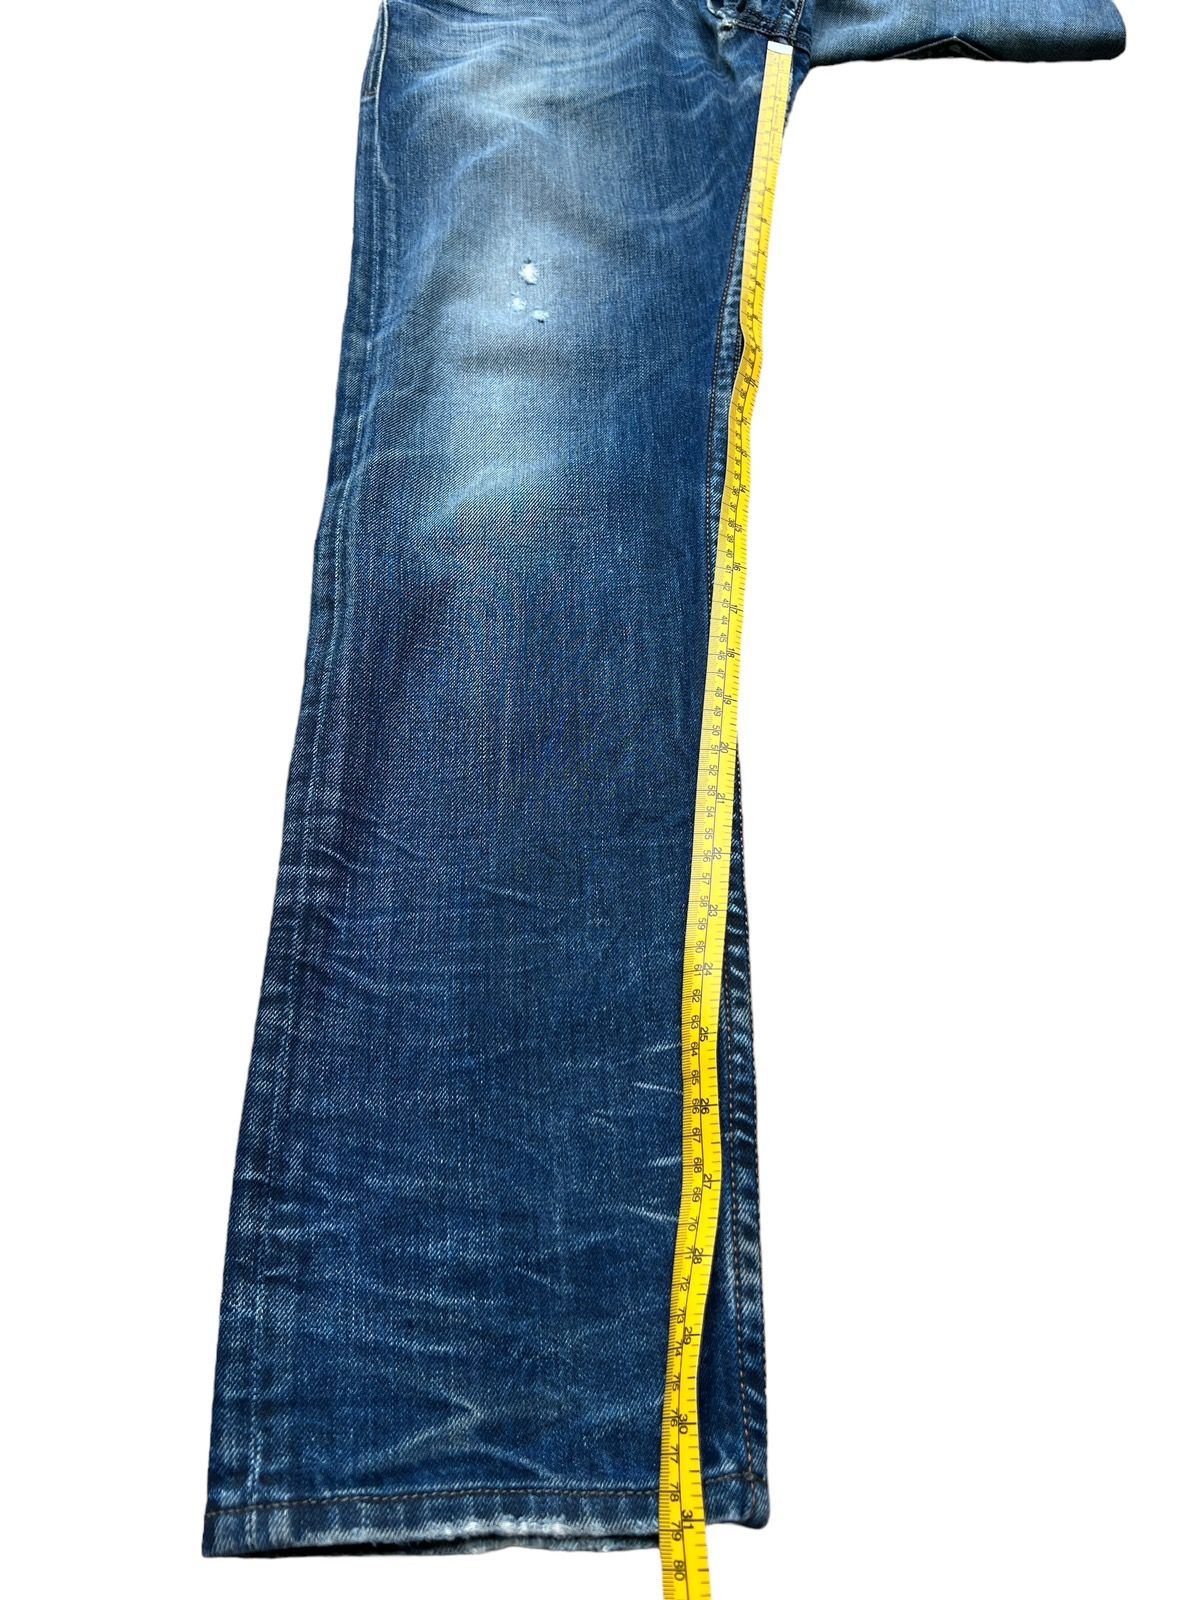 Vintage Diesel Industry Distressed Denim Jeans 32x31 - 13